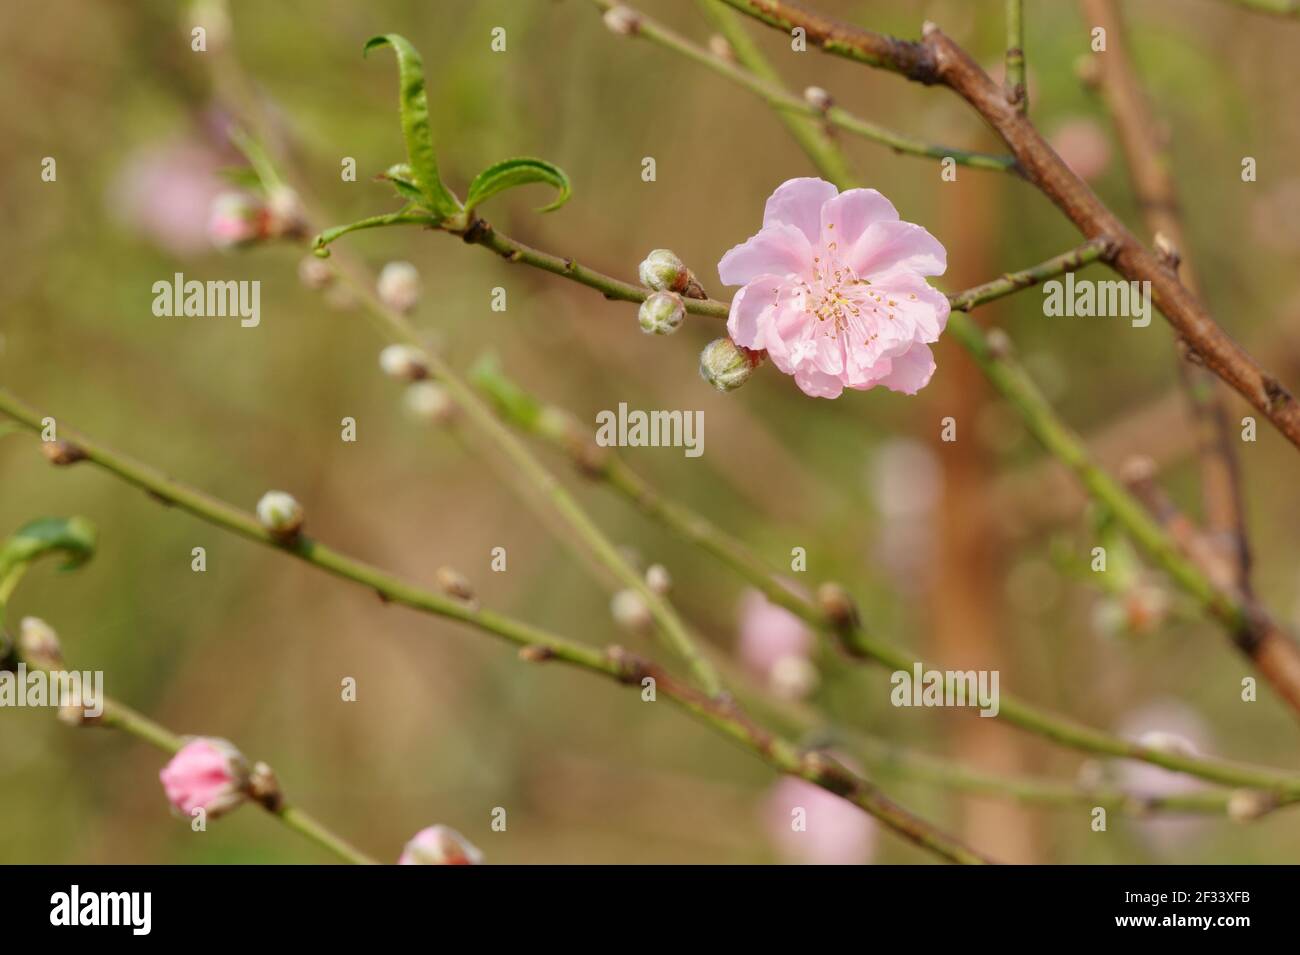 Gros plan de la fleur de pêche rose clair sur la branche de l'arbre Banque D'Images